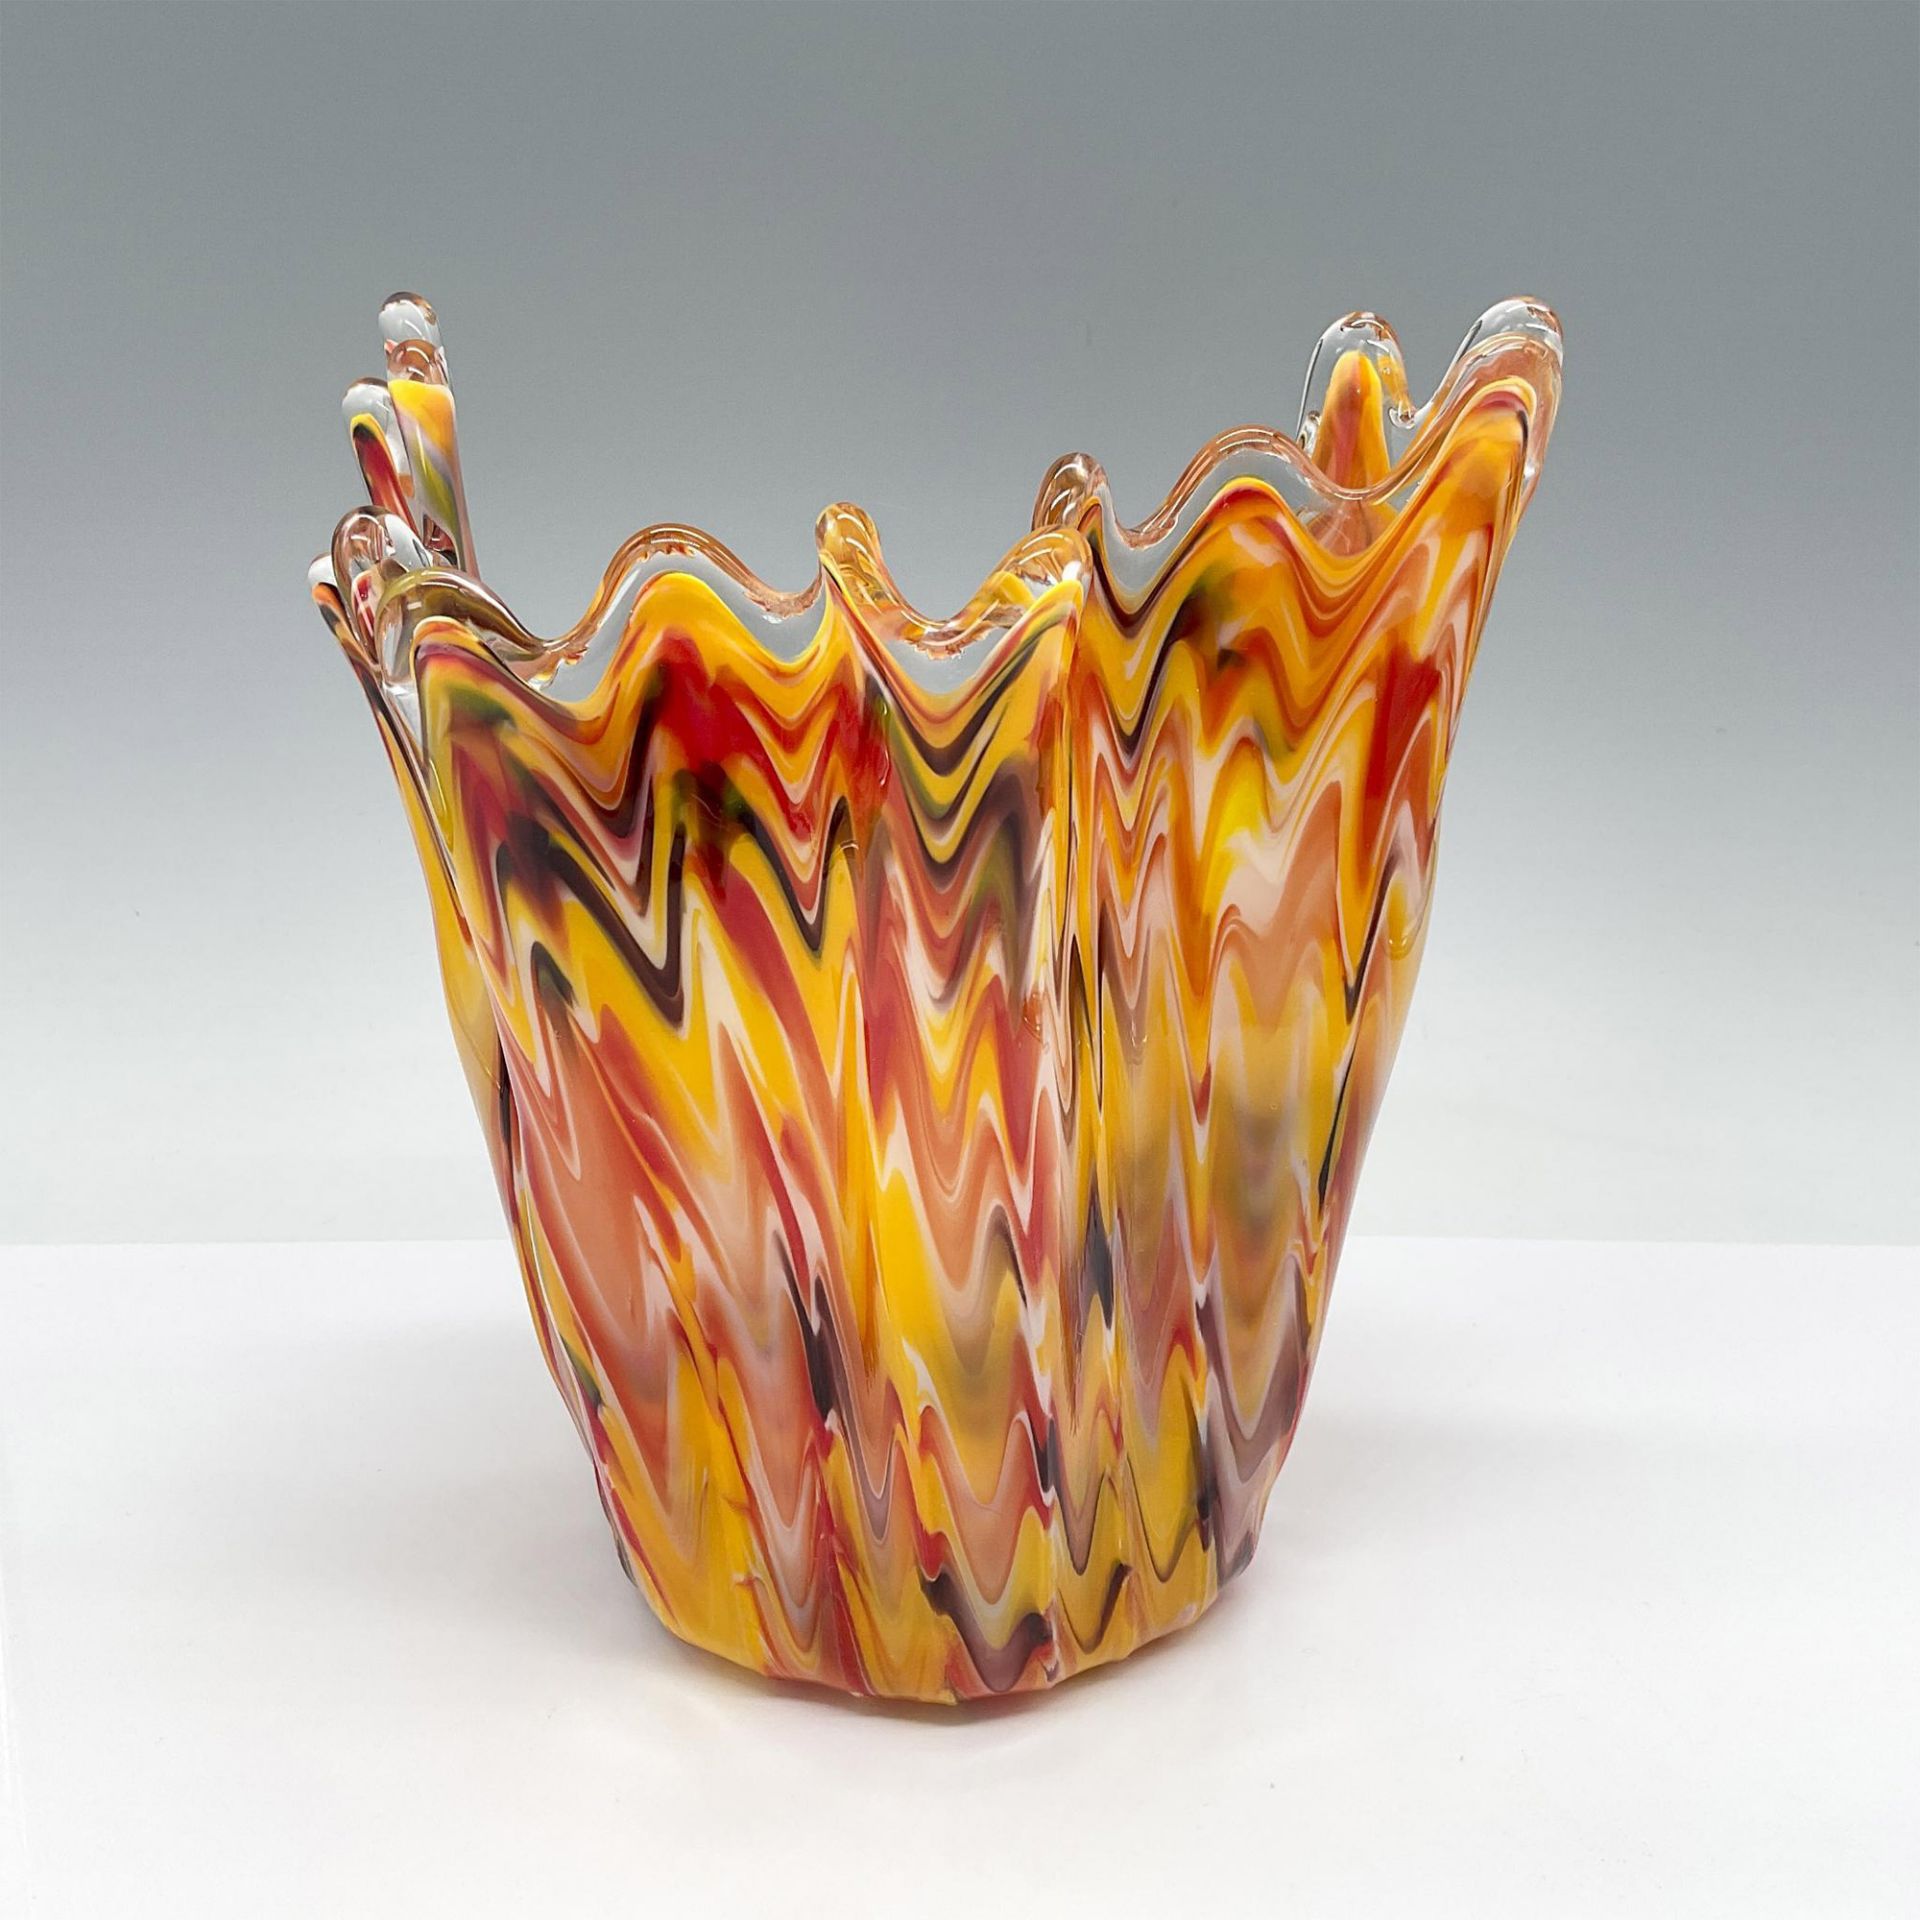 Murano Hand Blown Art Glass Vase in Orange Red Yellow - Image 2 of 3